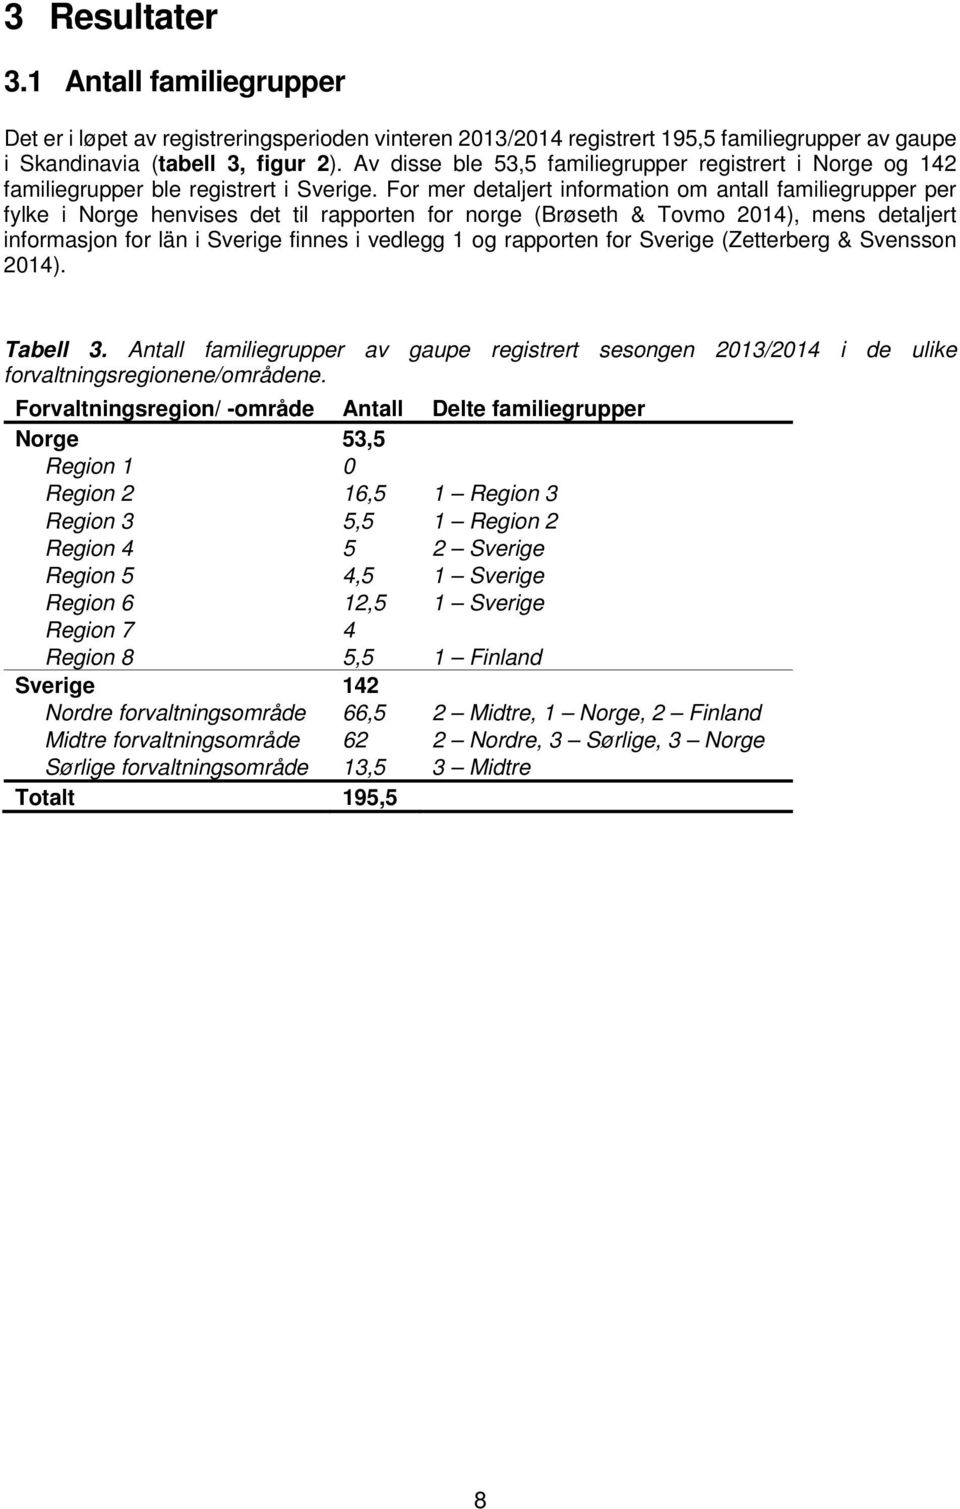 For mer detaljert information om antall familiegrupper per fylke i Norge henvises det til rapporten for norge (Brøseth & Tovmo 2014), mens detaljert informasjon for län i Sverige finnes i vedlegg 1